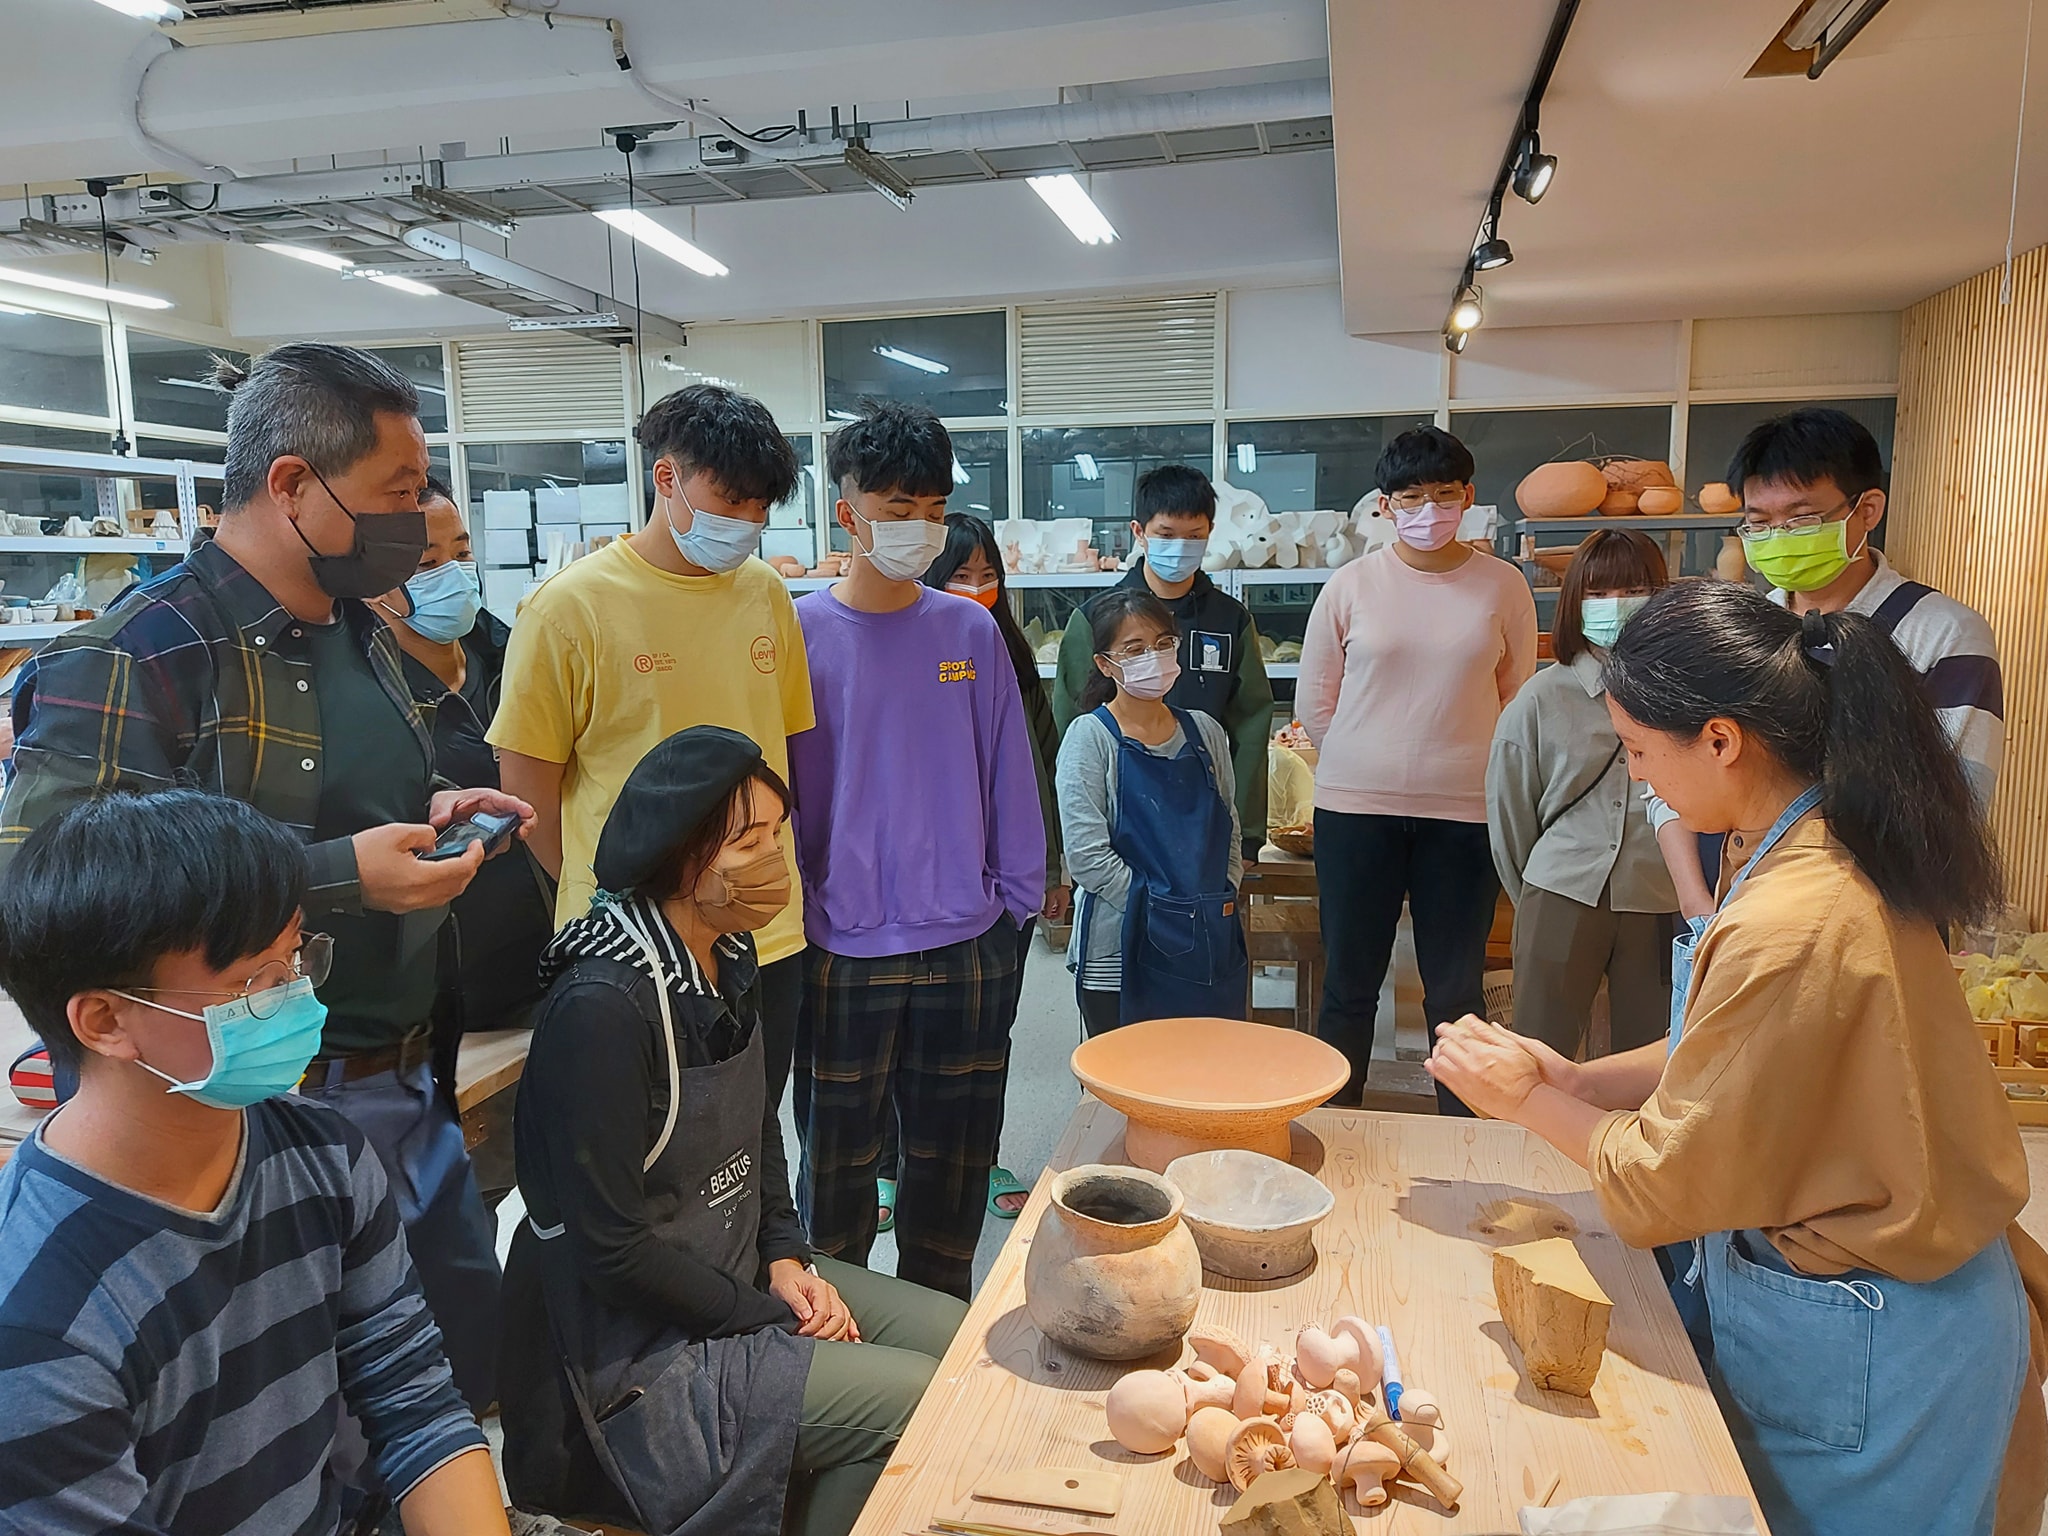 姿瑩老師先是向同學們介紹了原住民族製作陶器的脈絡